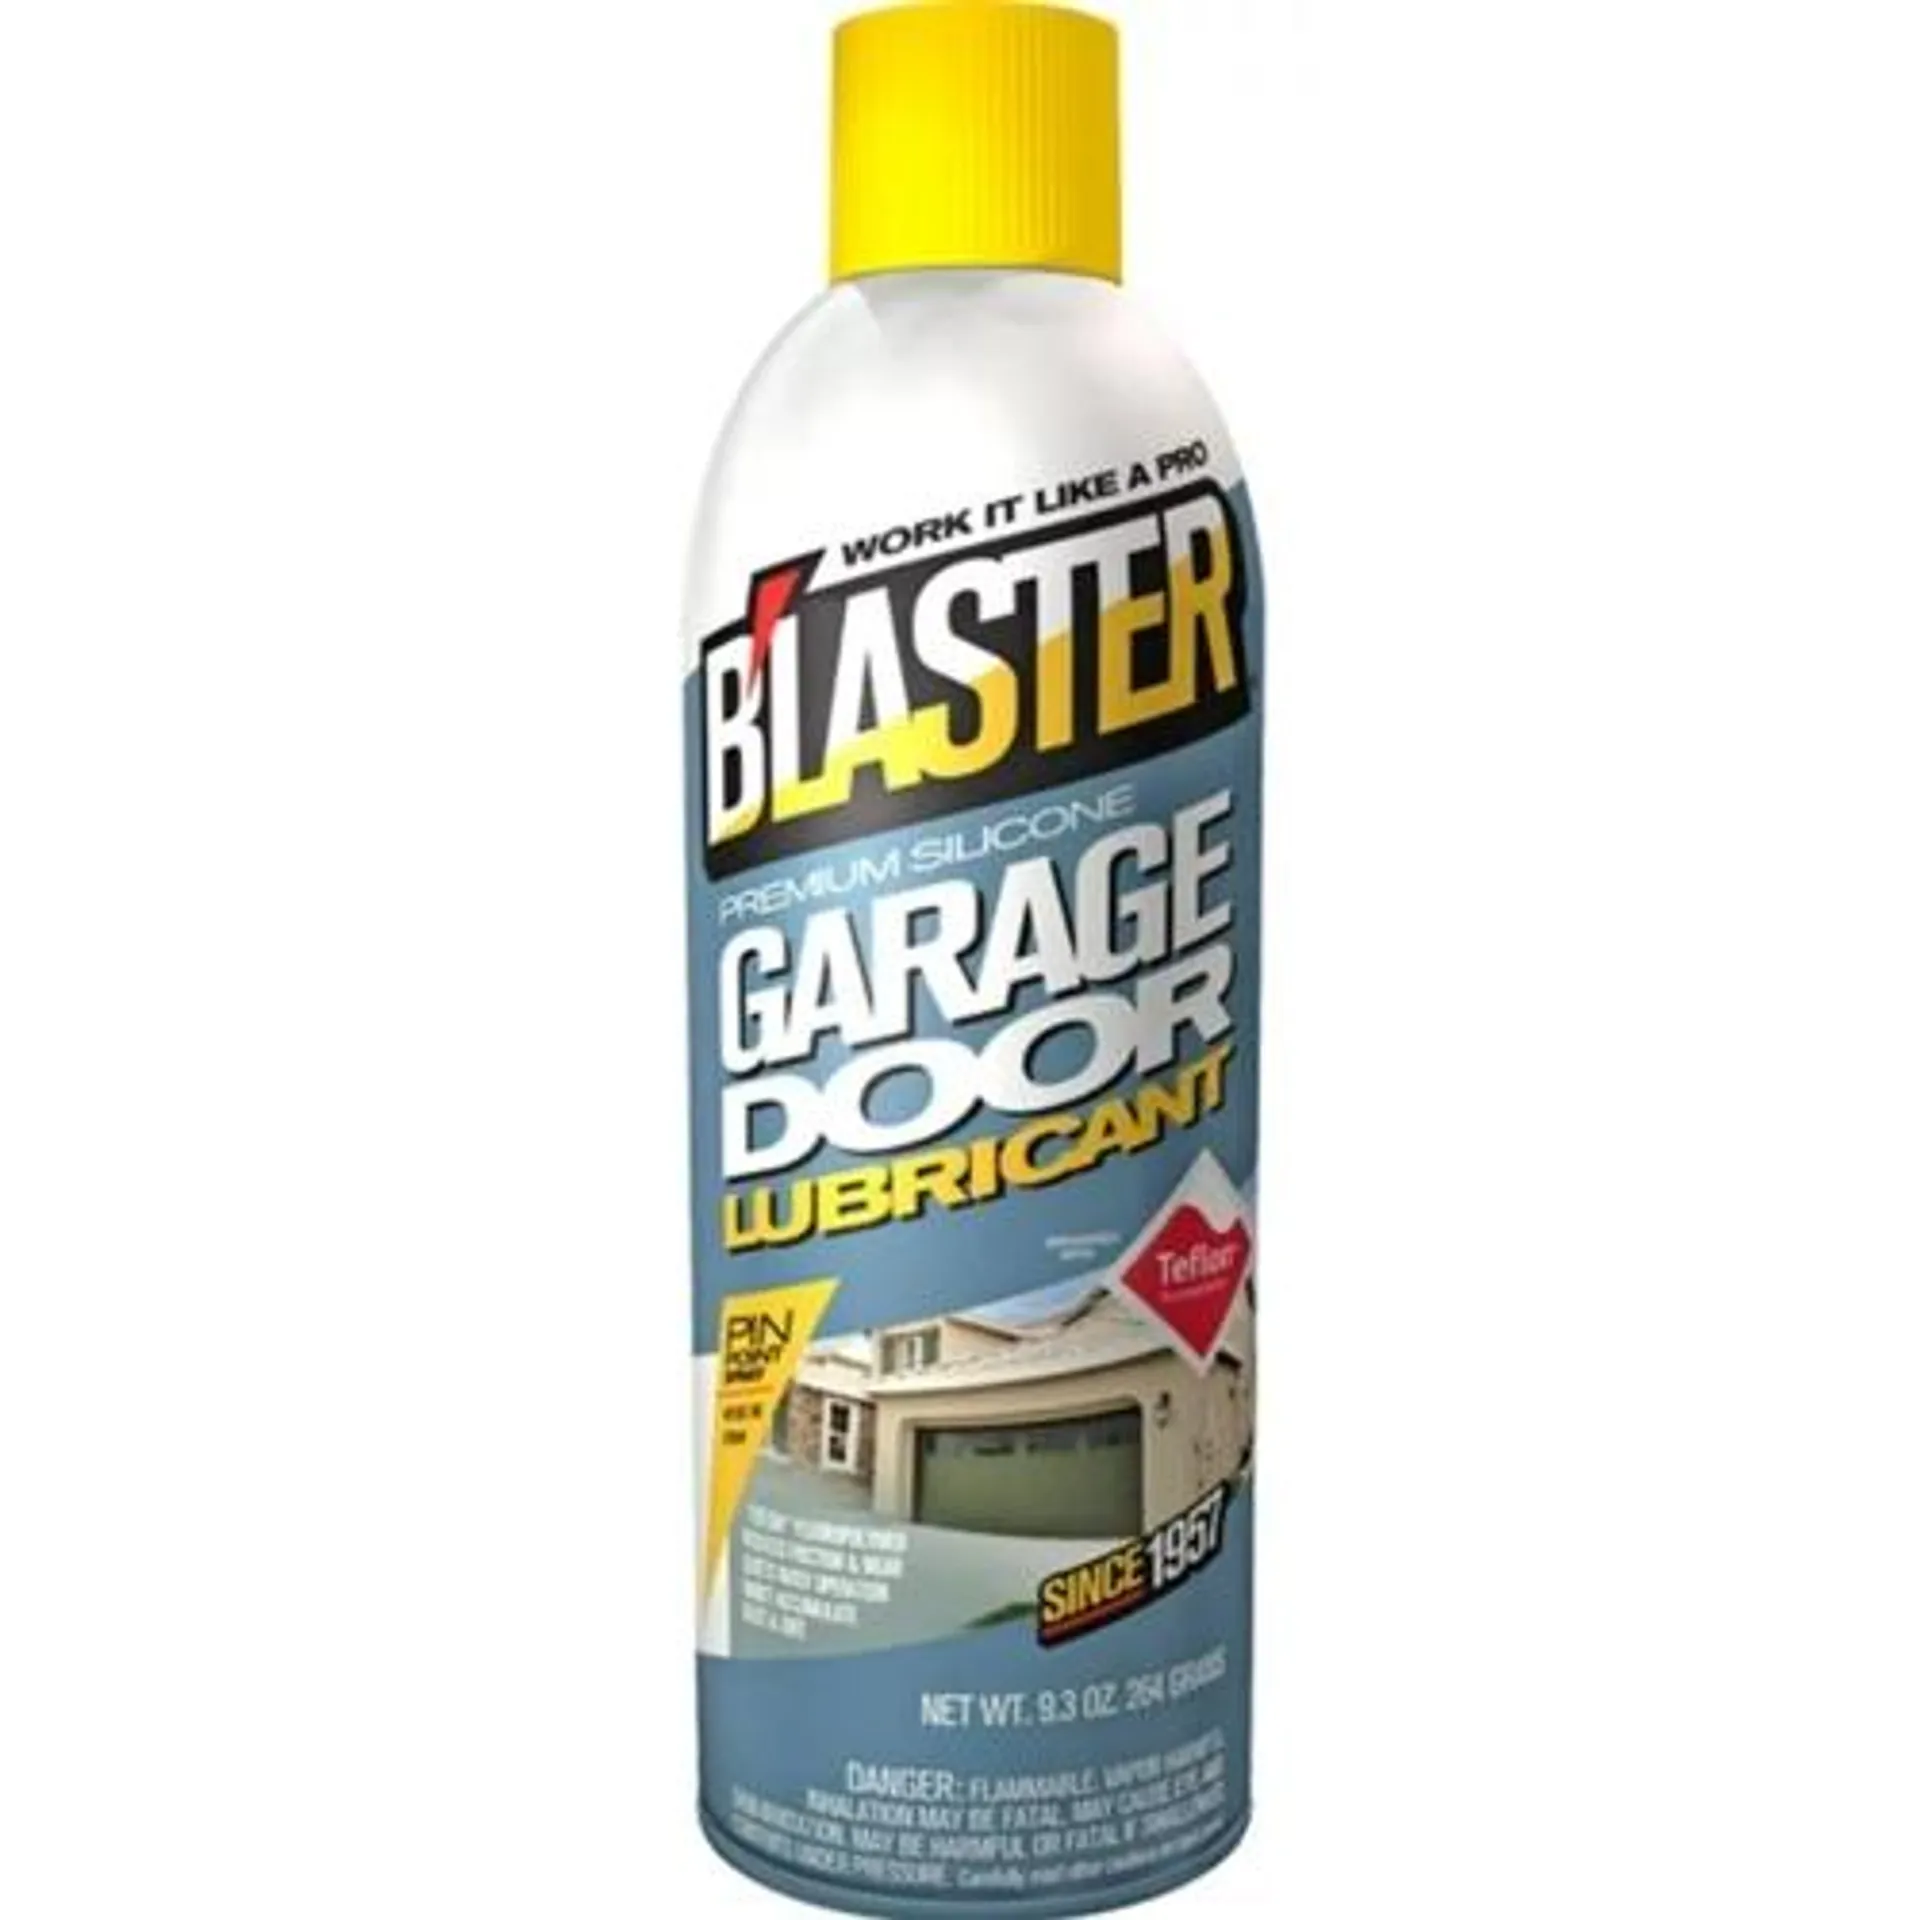 Blaster Garage Door Lubricant, 9.3oz